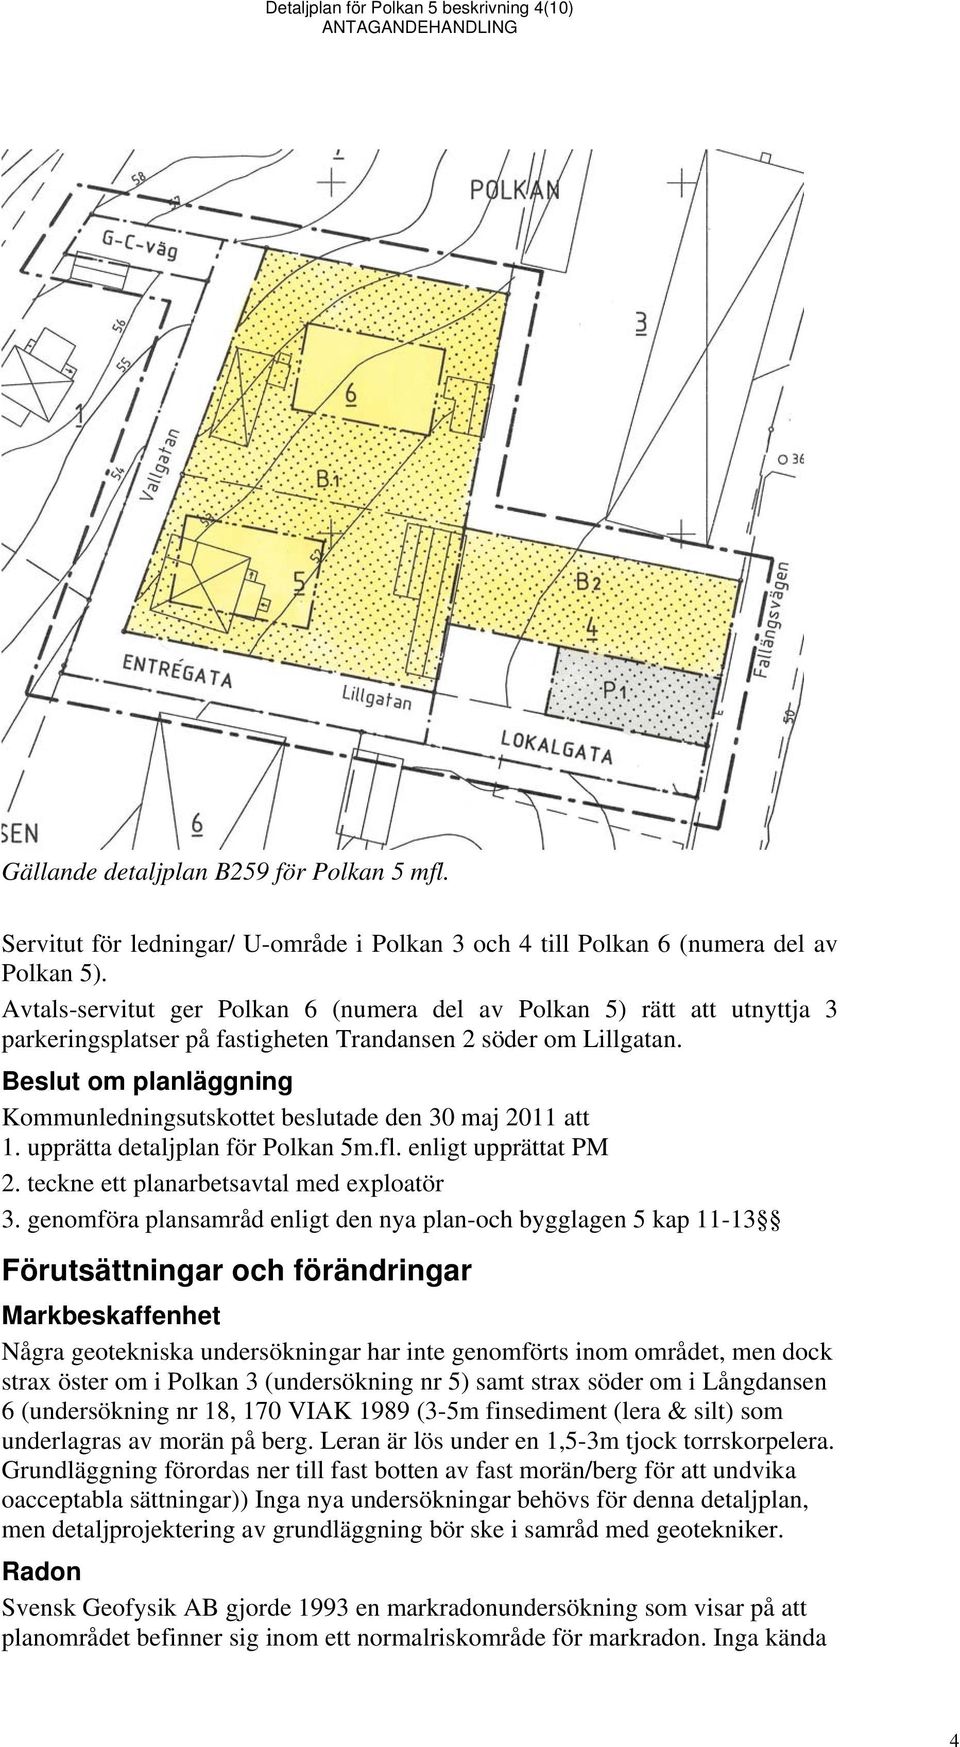 Beslut om planläggning Kommunledningsutskottet beslutade den 30 maj 2011 att 1. upprätta detaljplan för Polkan 5m.fl. enligt upprättat PM 2. teckne ett planarbetsavtal med exploatör 3.